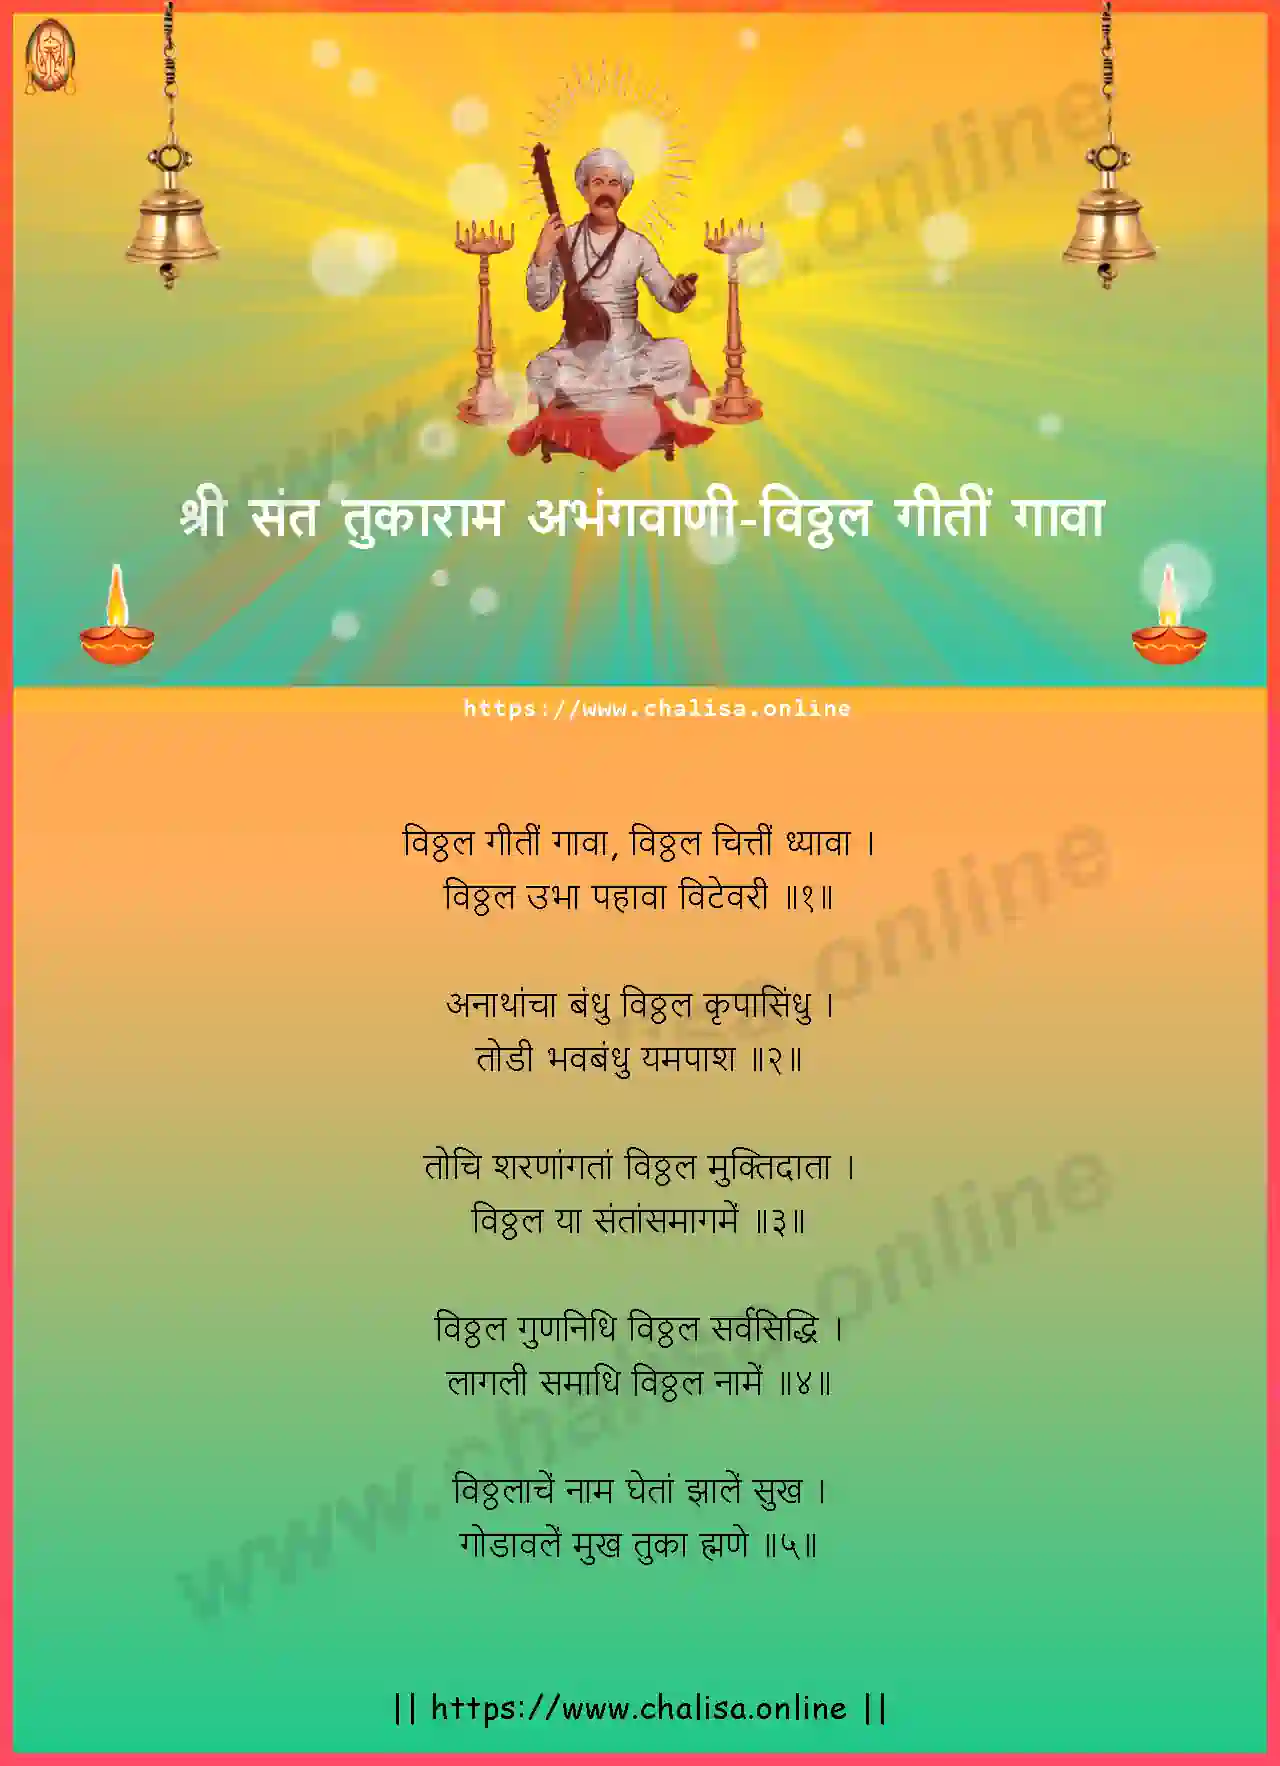 vitthal-giti-gava-shri-sant-tukaram-abhang-marathi-lyrics-download